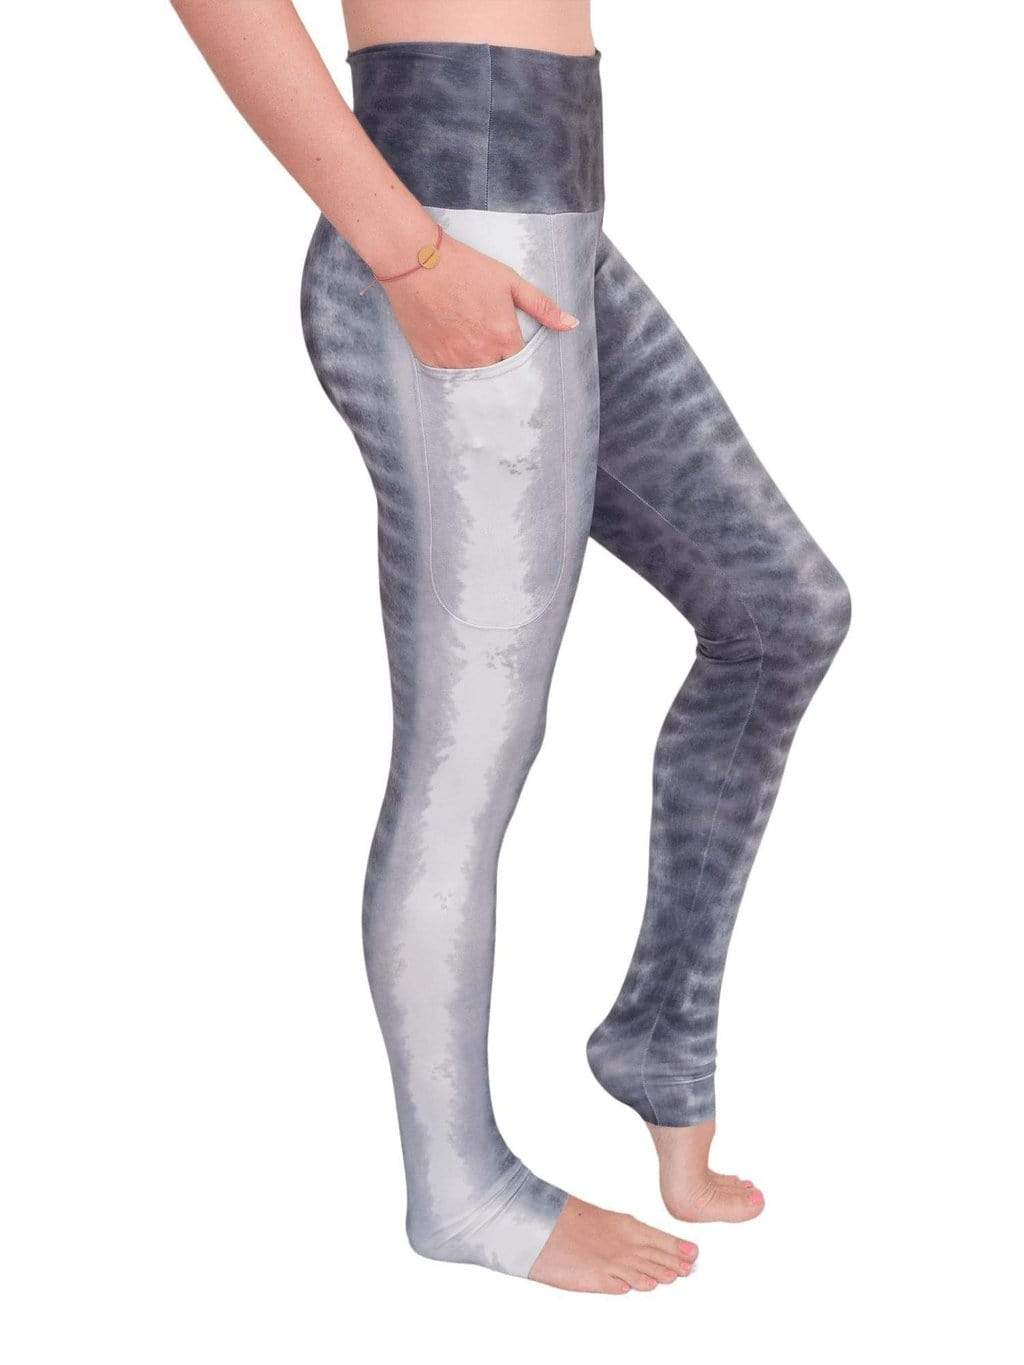 Simulated Shark Skin Slender Aeropostale Leggings For Women Body